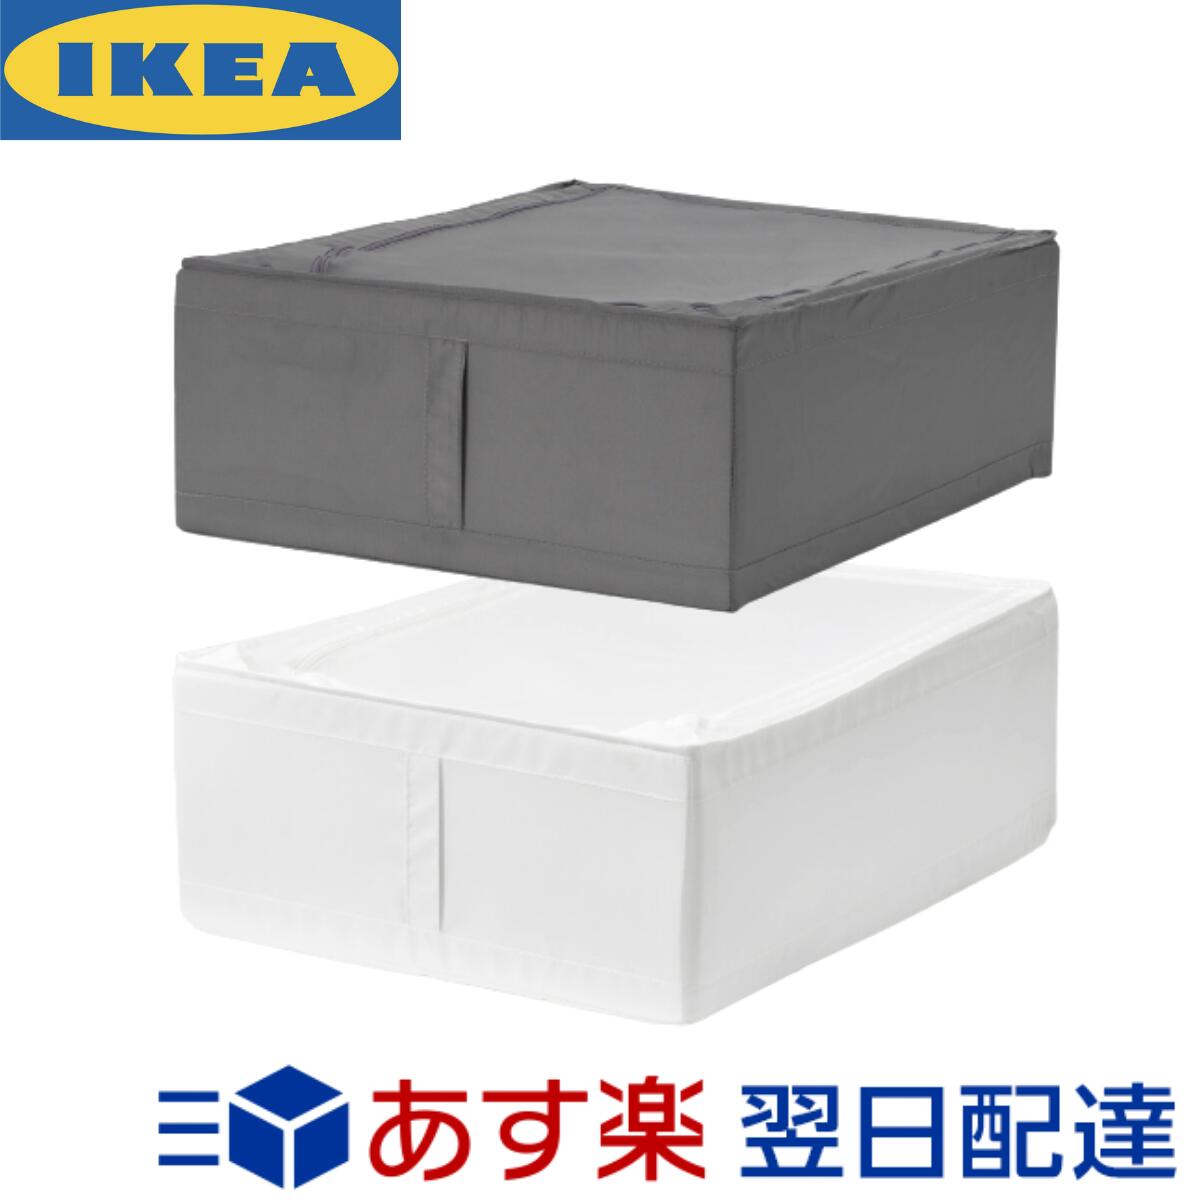 楽天市場 Ikea Original Skubb スクッブ 収納ケース ホワイト 69 55 19 Cm Shop Polori 楽天市場店